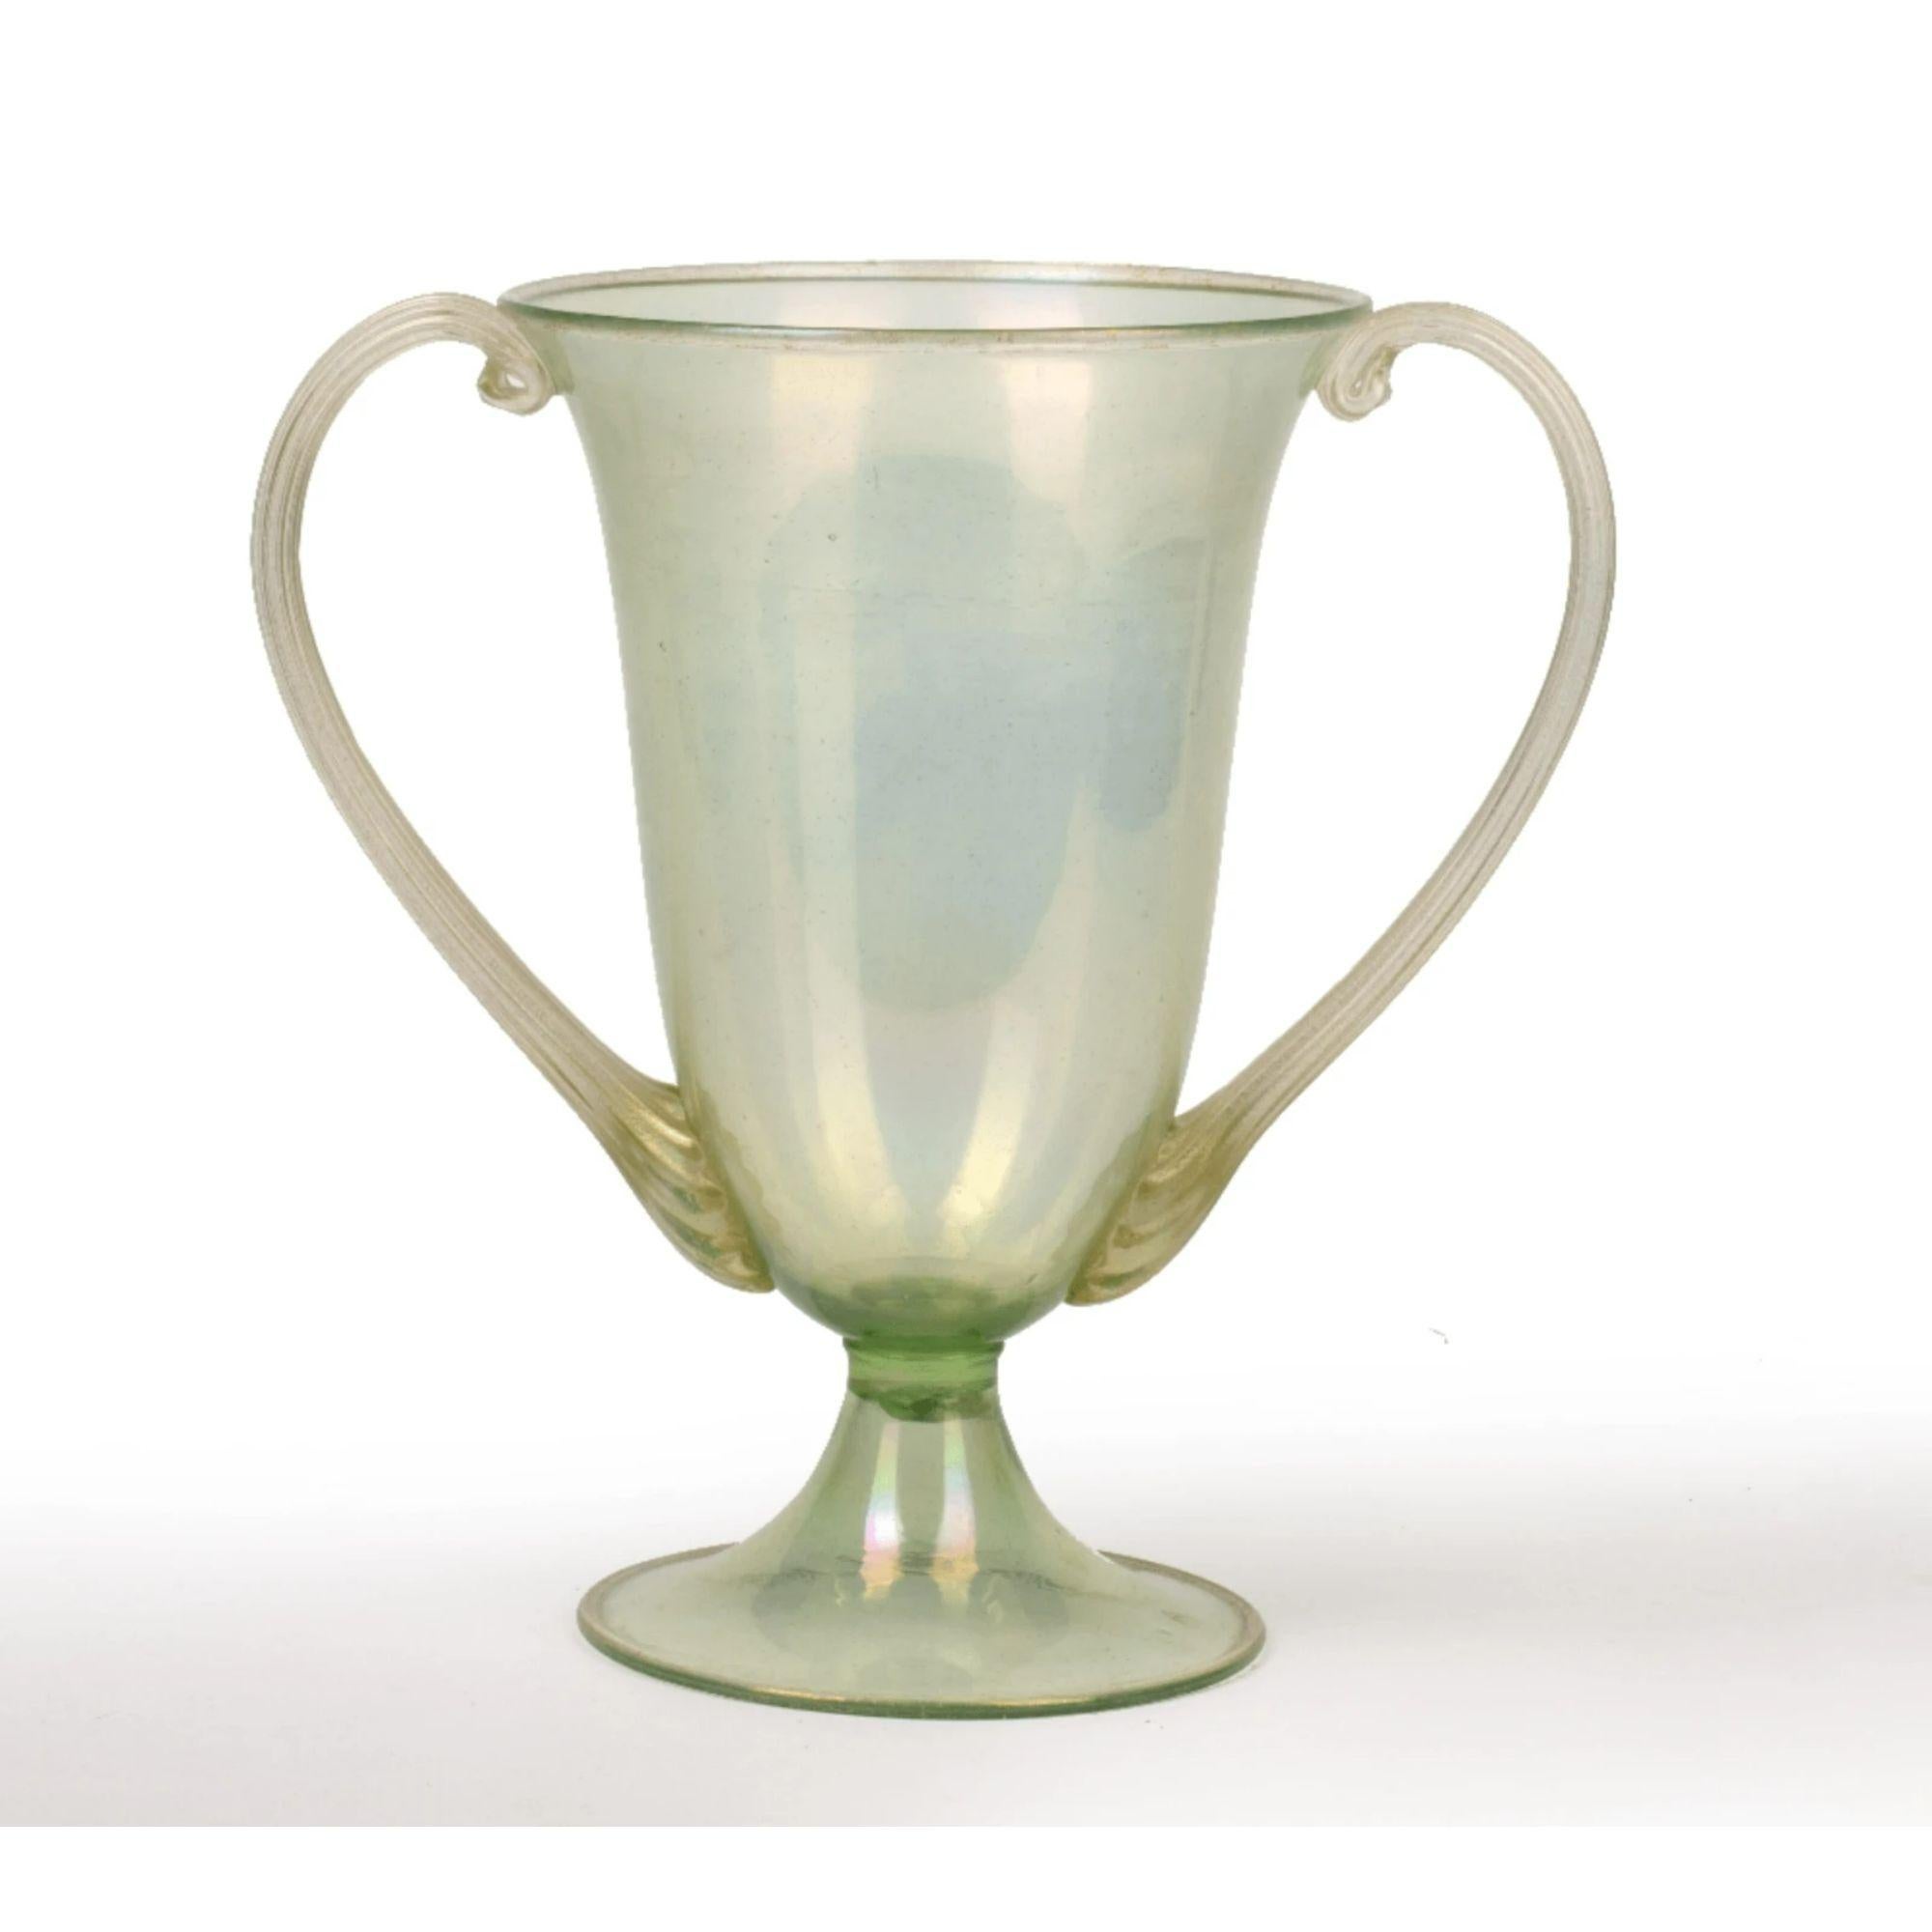 Vase mit zwei Henkeln von Salviati & Co.

Venezianische Glasvase mit zwei Henkeln. Grün mit Blattgold, unsigniert.

Abmessungen: H 26cm.